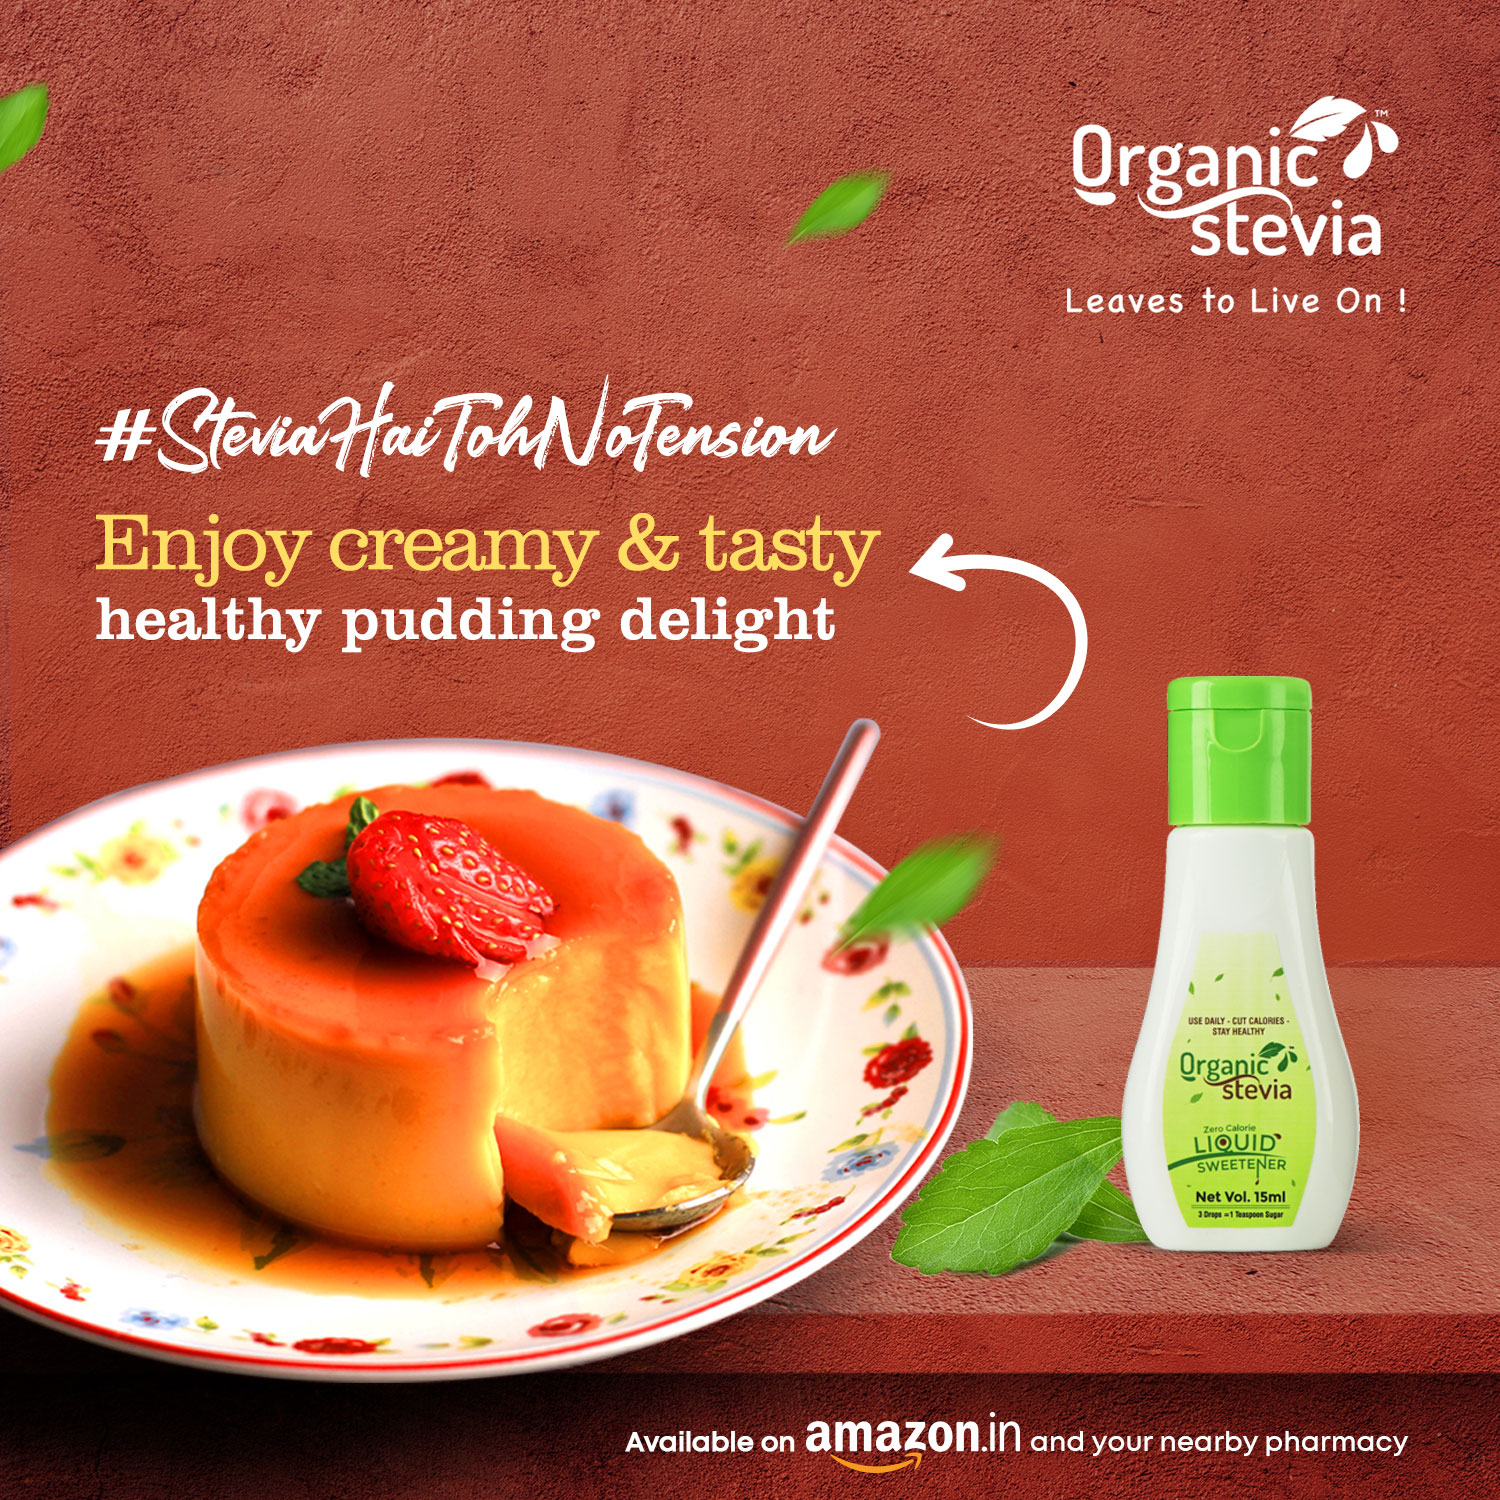 organic-stevia-enjoy-creamy-and-tasty-delight